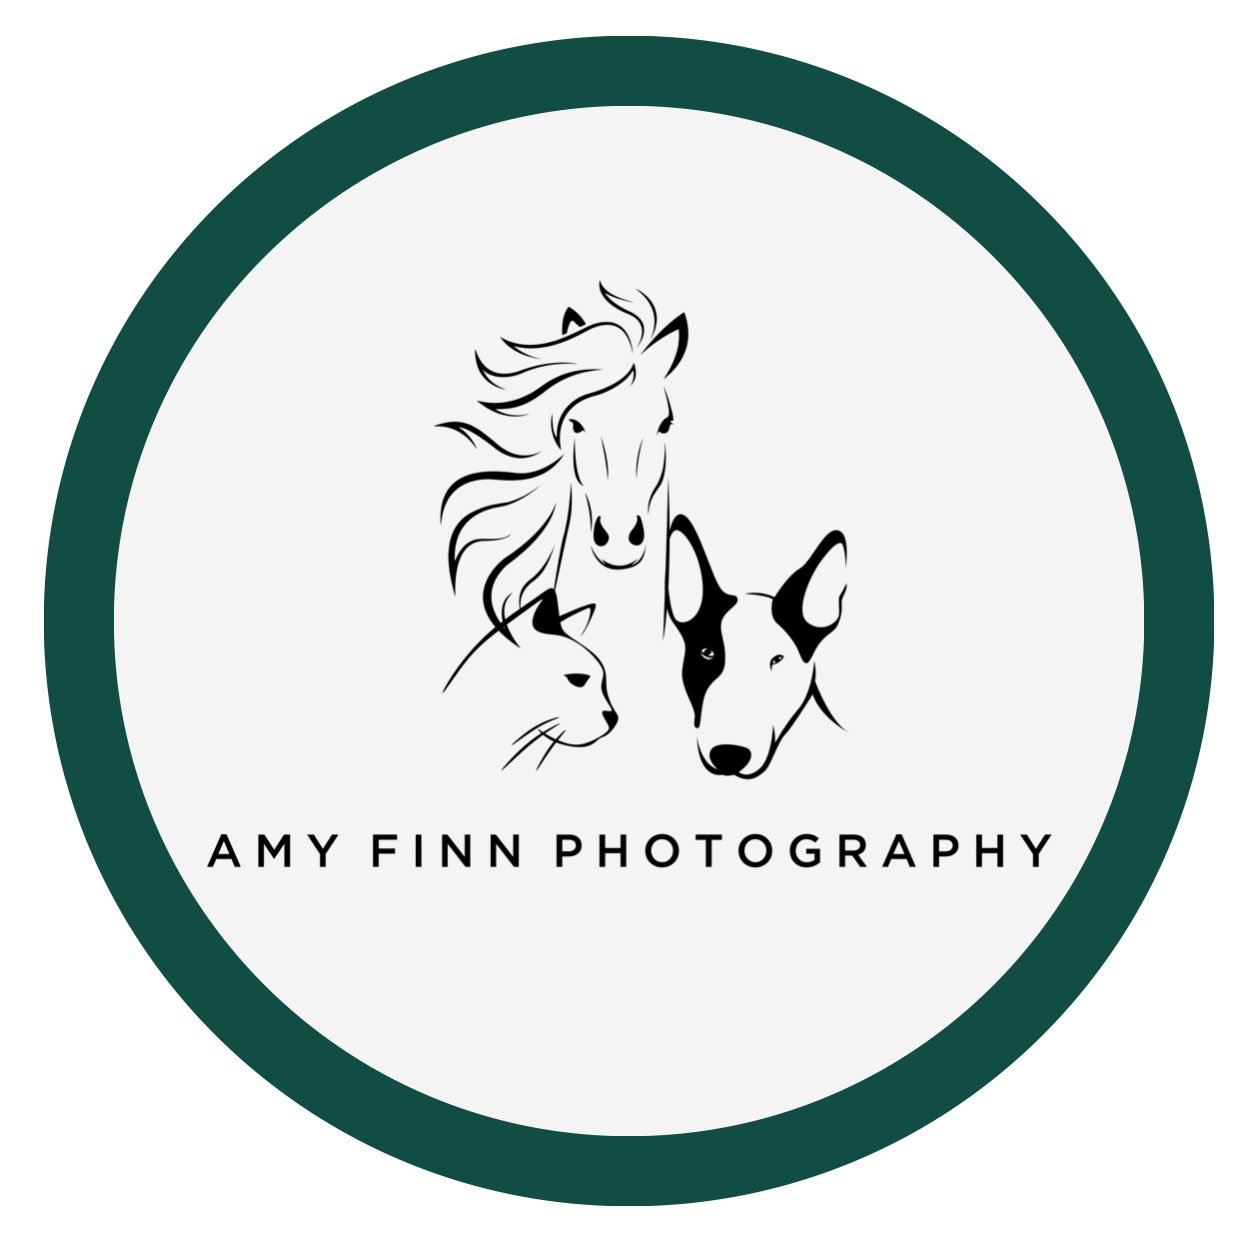 Amy Finn Photography